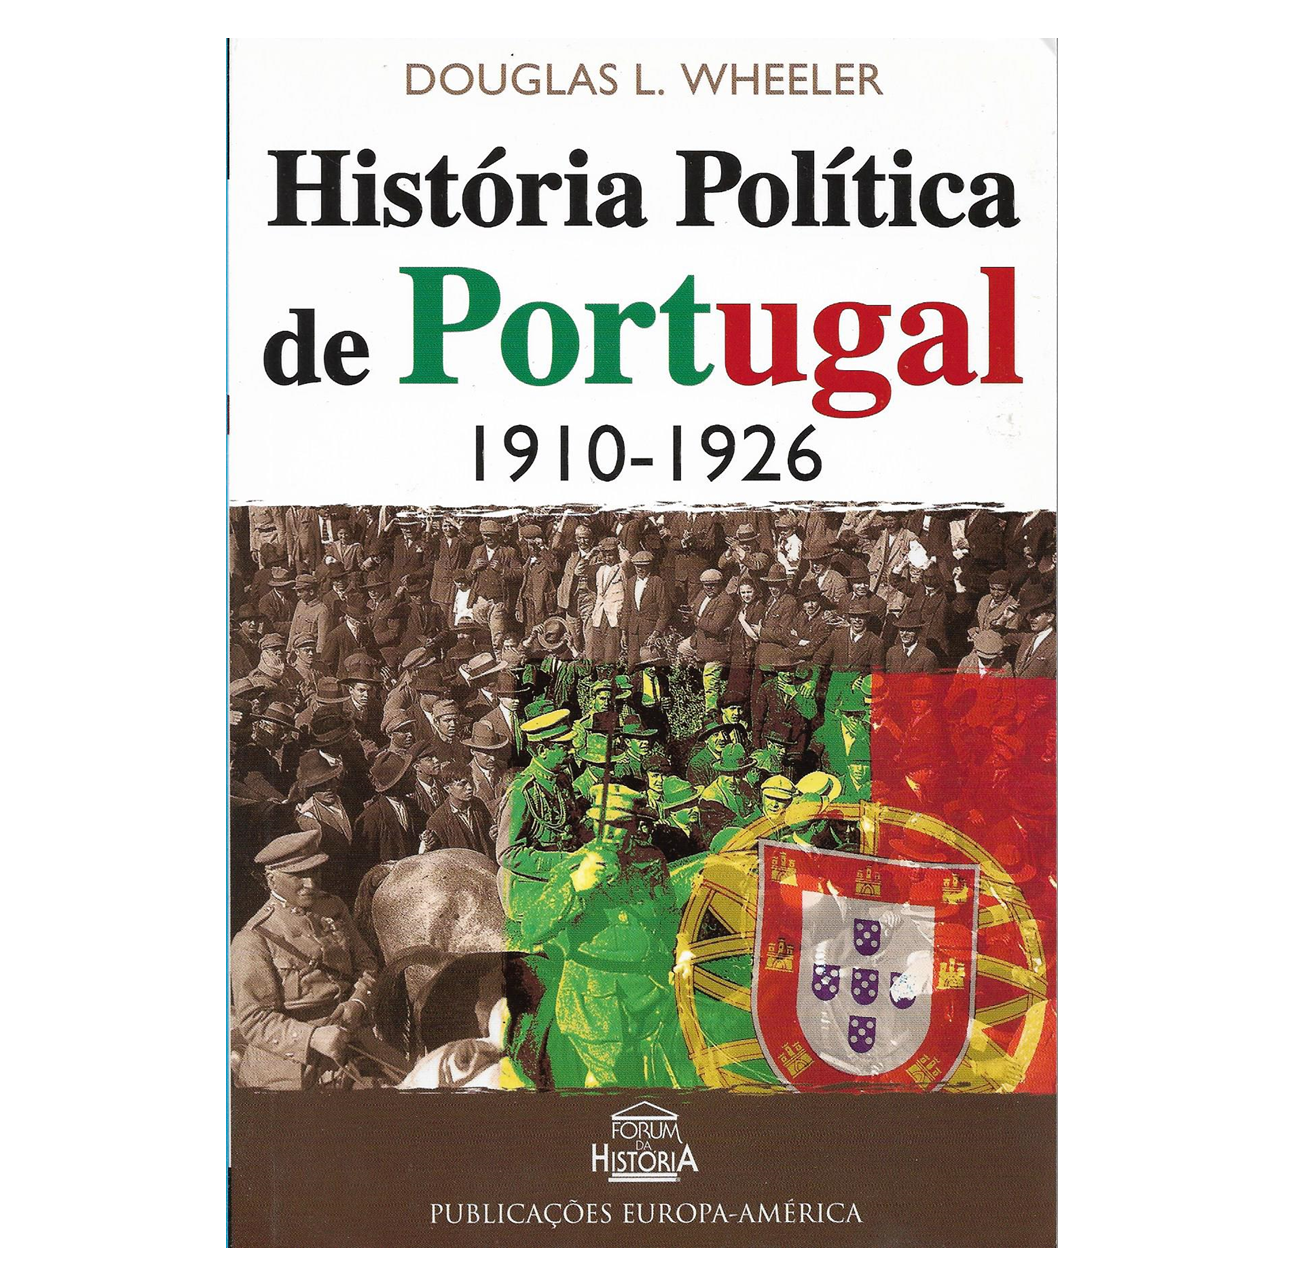  HISTÓRIA POLÍTICA DE PORTUGAL: 1910-1926.